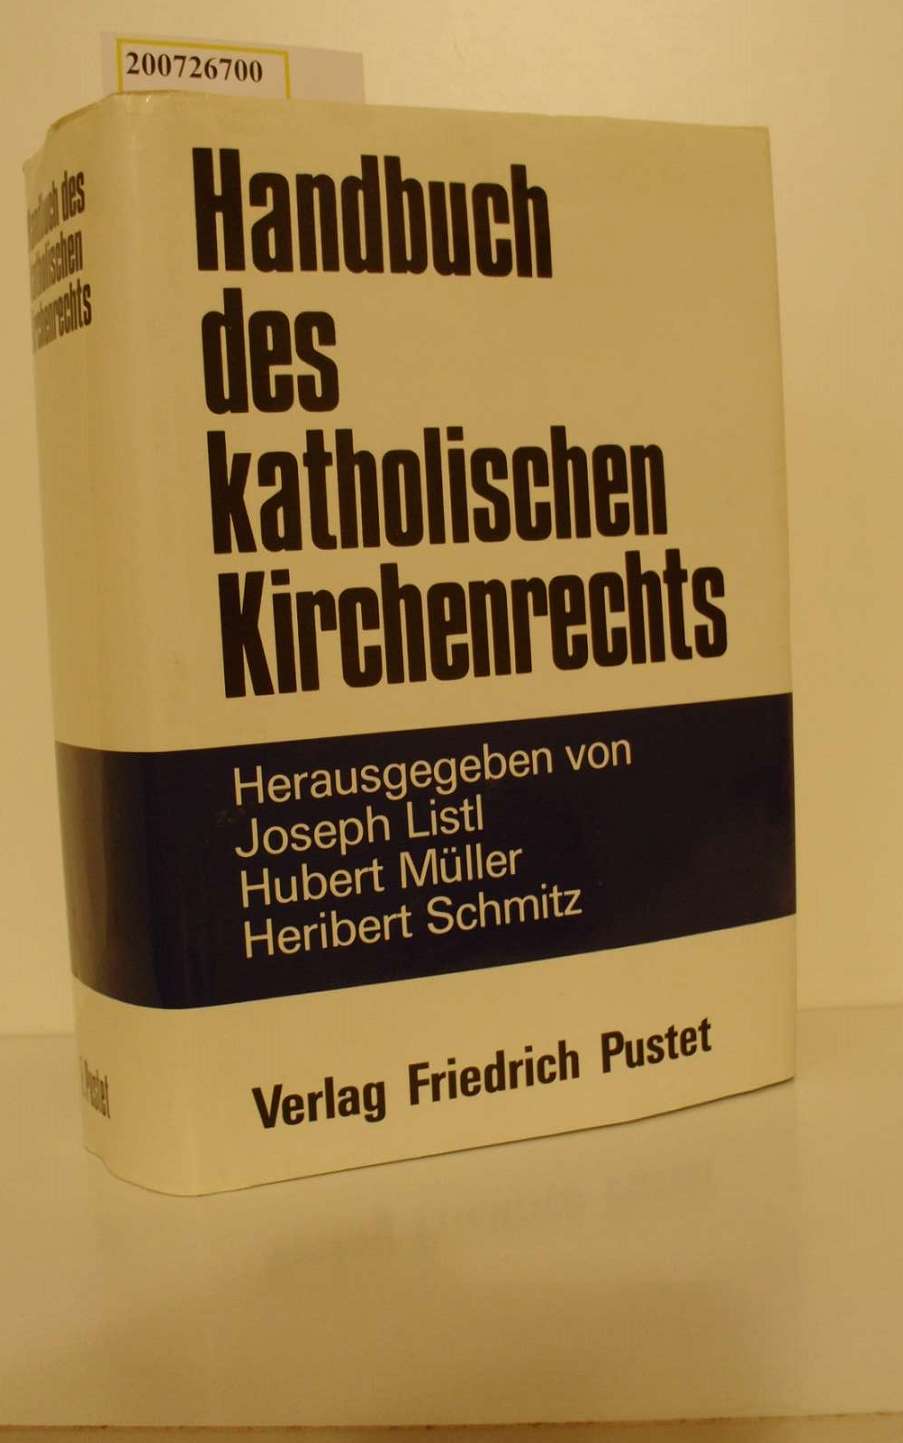 Handbuch des katholischen Kirchenrechts / hrsg. von Joseph Listl .